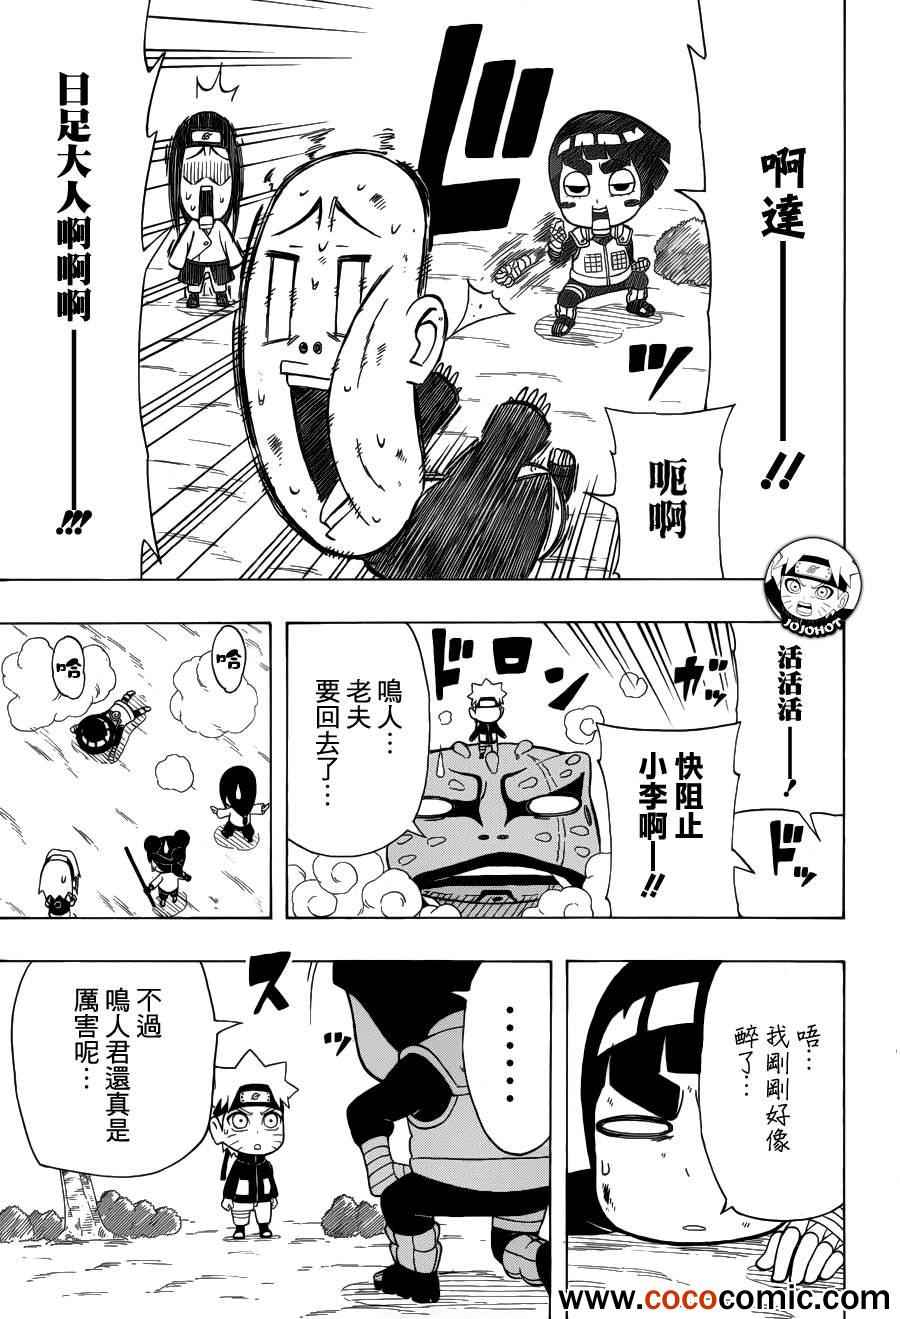 《洛克李之青春活力全开忍传》漫画 洛克李24集